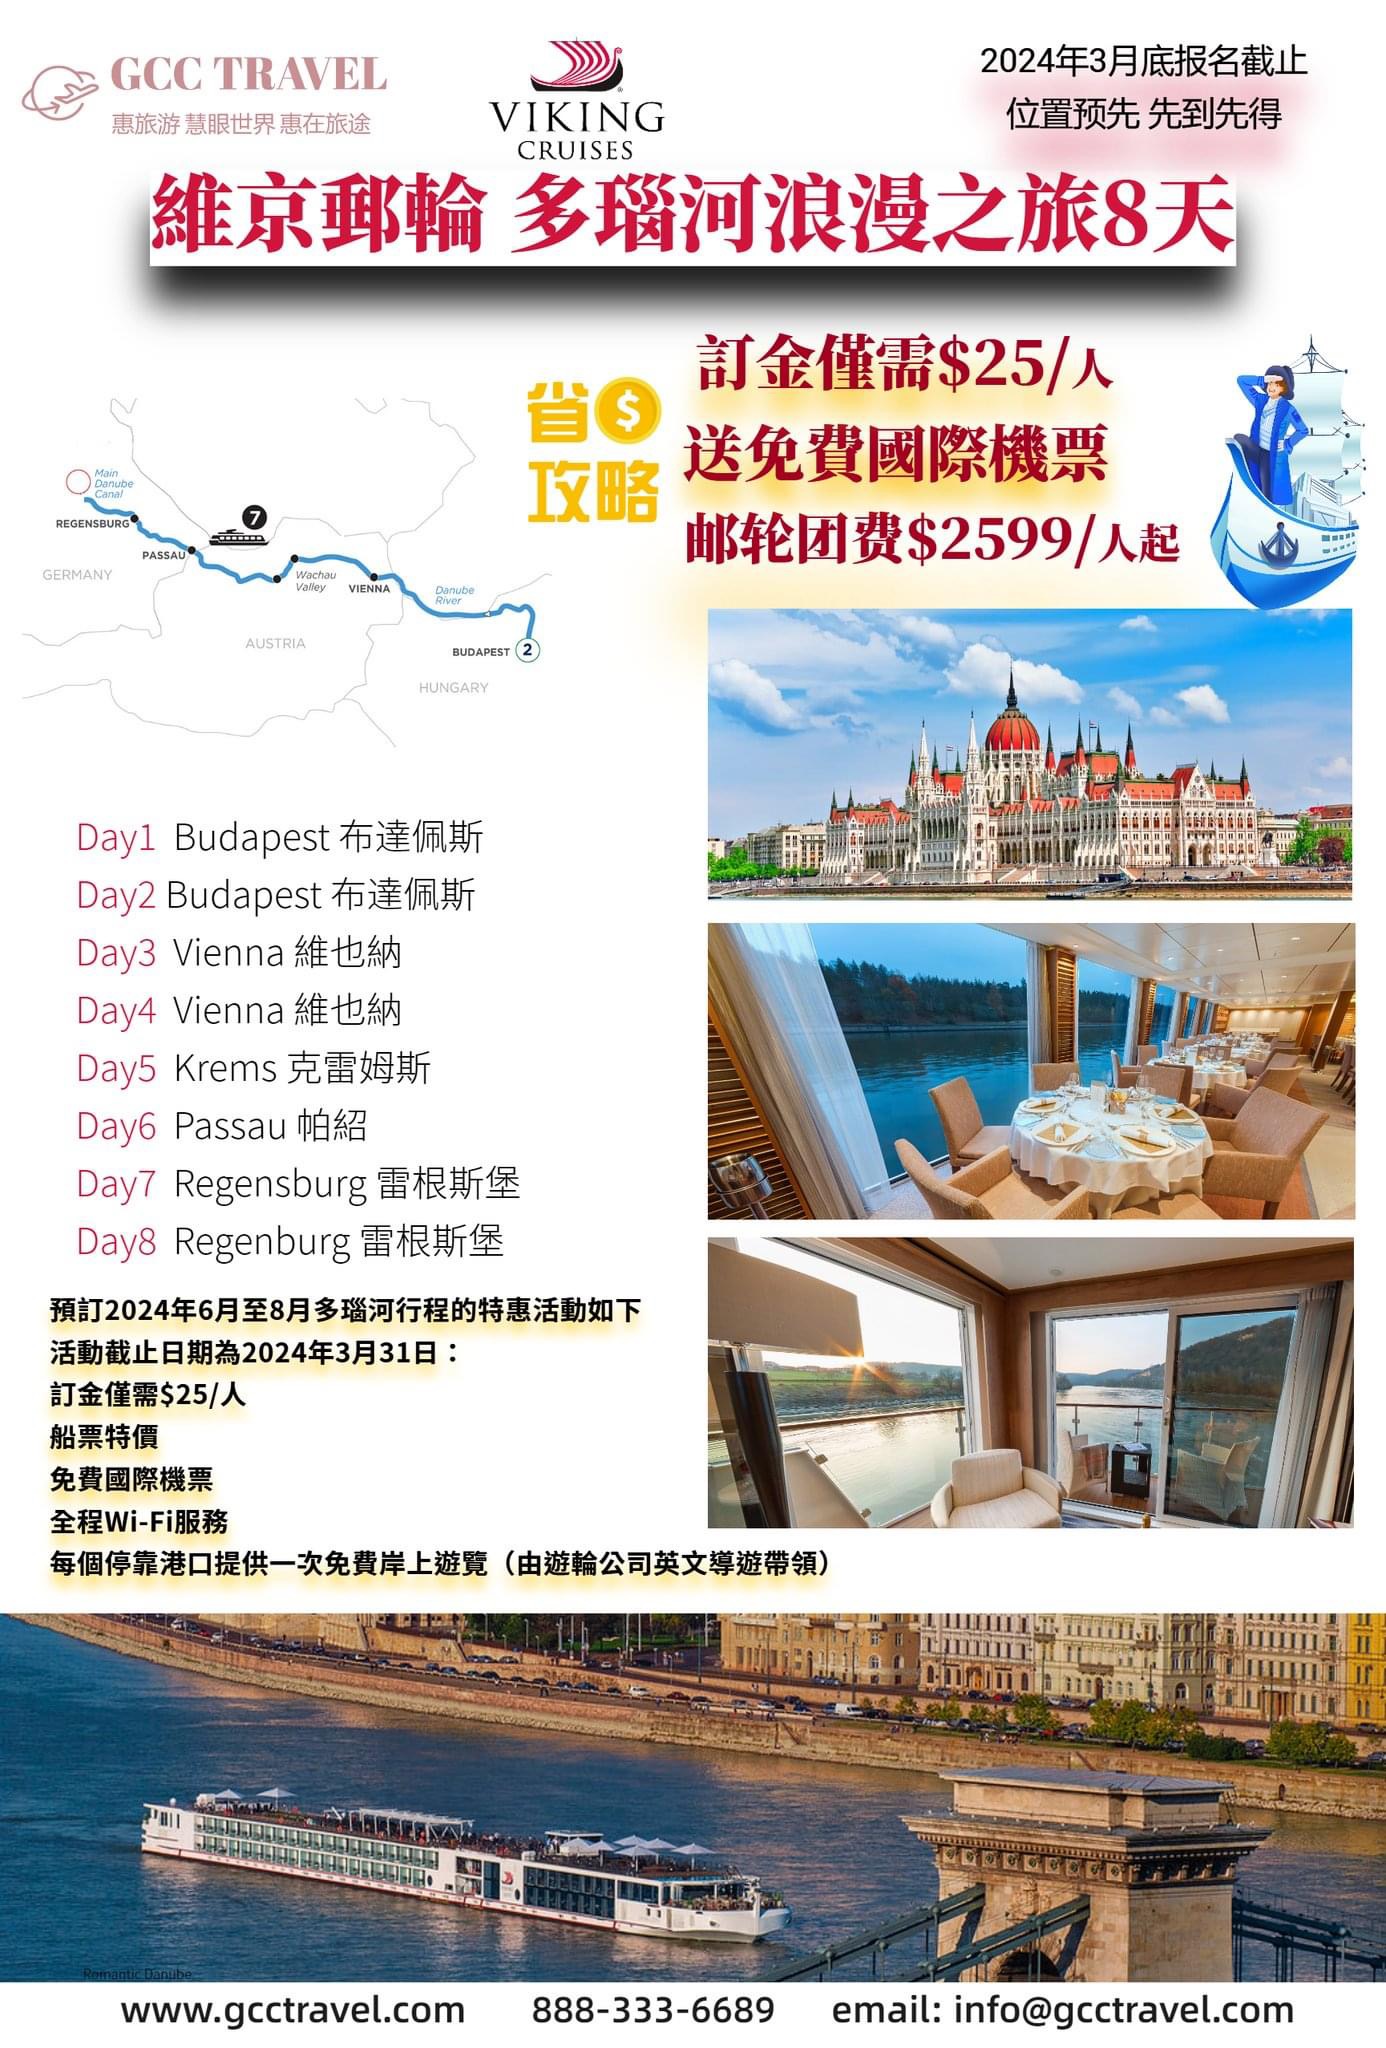  【旅遊】超级钜惠活动仅剩最后兩天 2024 Viking Cruises 维京河轮多瑙河行程